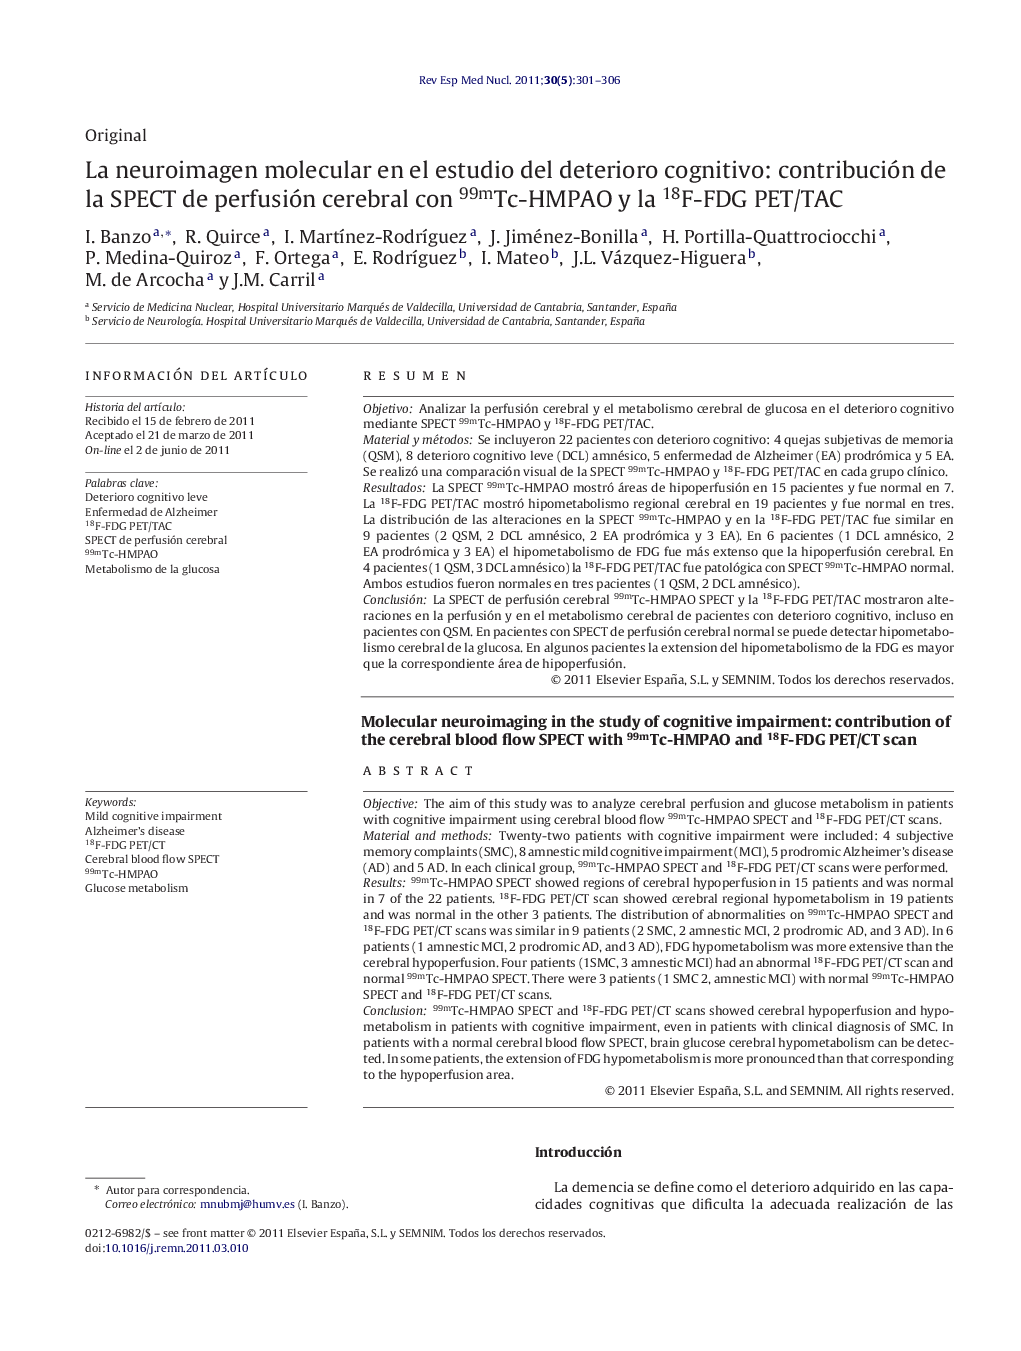 La neuroimagen molecular en el estudio del deterioro cognitivo: contribución de la SPECT de perfusión cerebral con 99mTc-HMPAO y la 18F-FDG PET/TAC